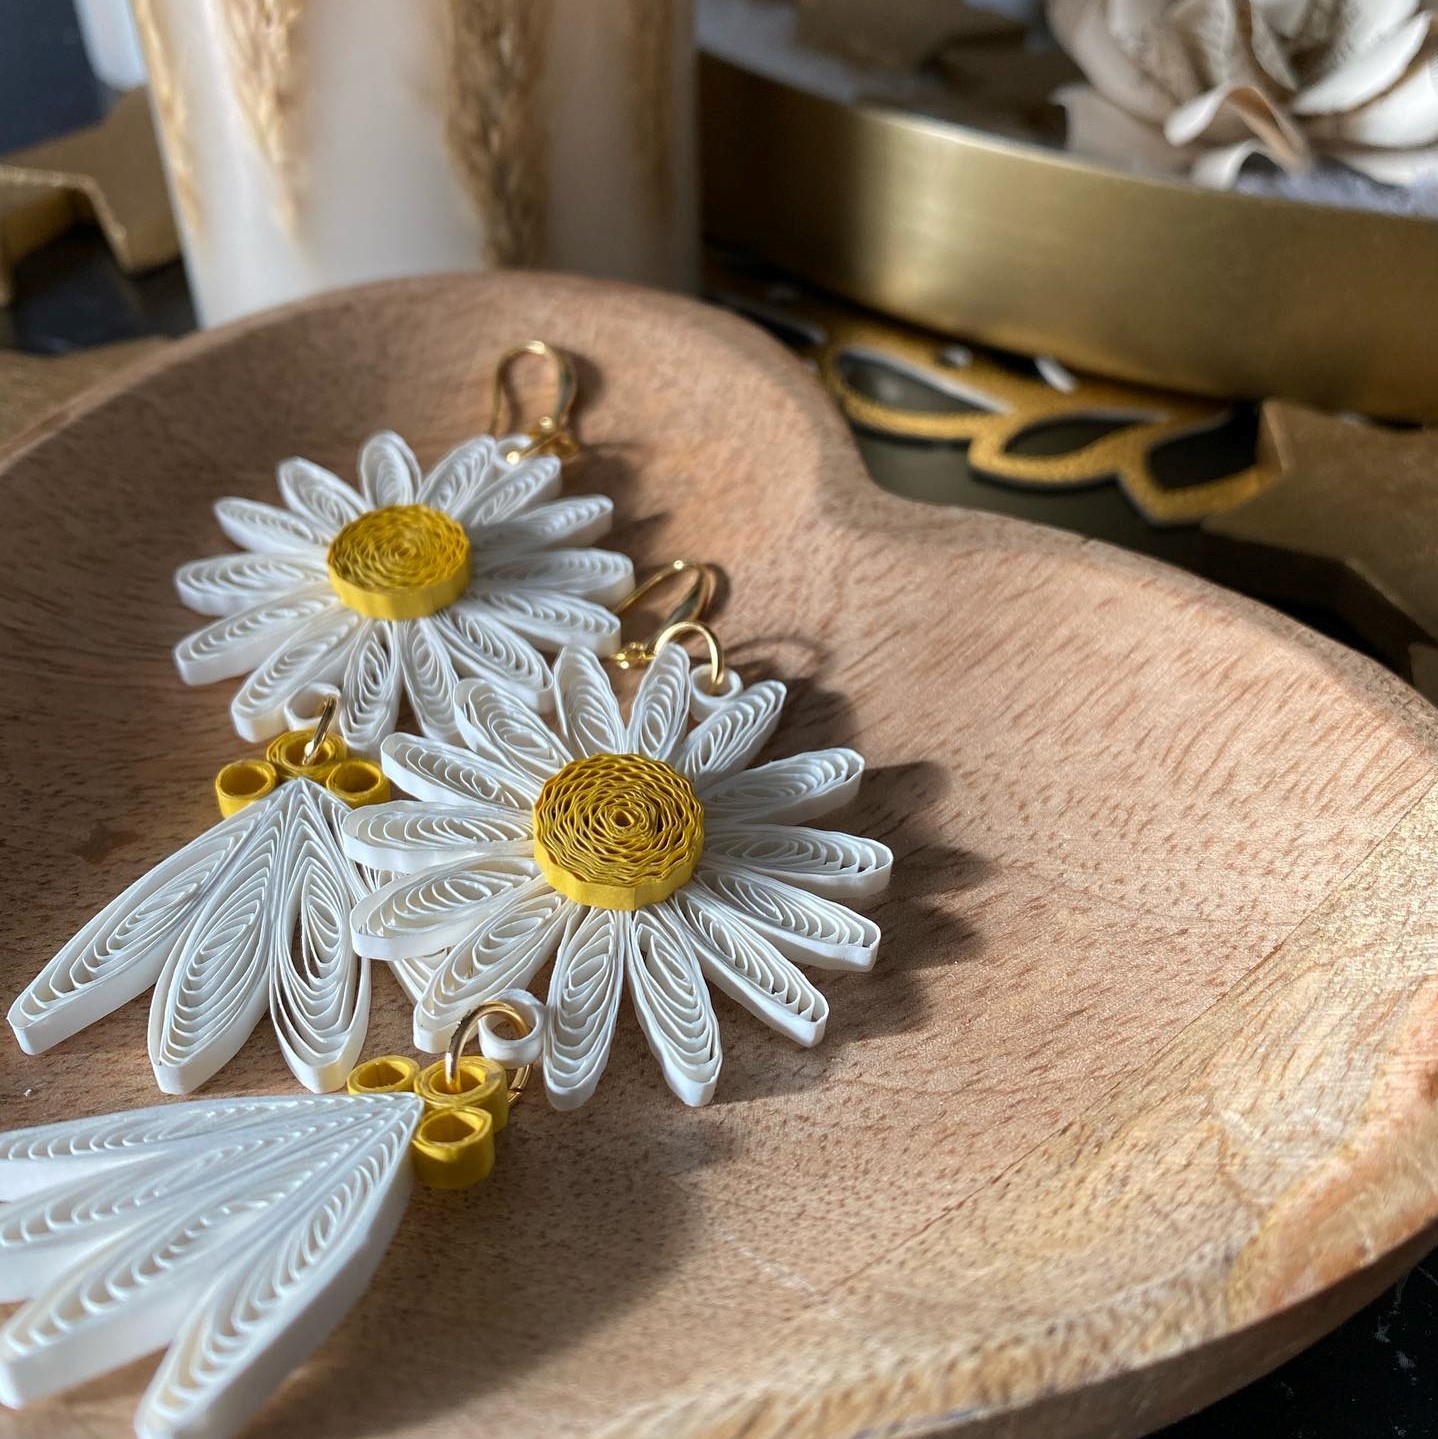 Tea Gerbeza - Sunflower paper earrings in a wooden bowl